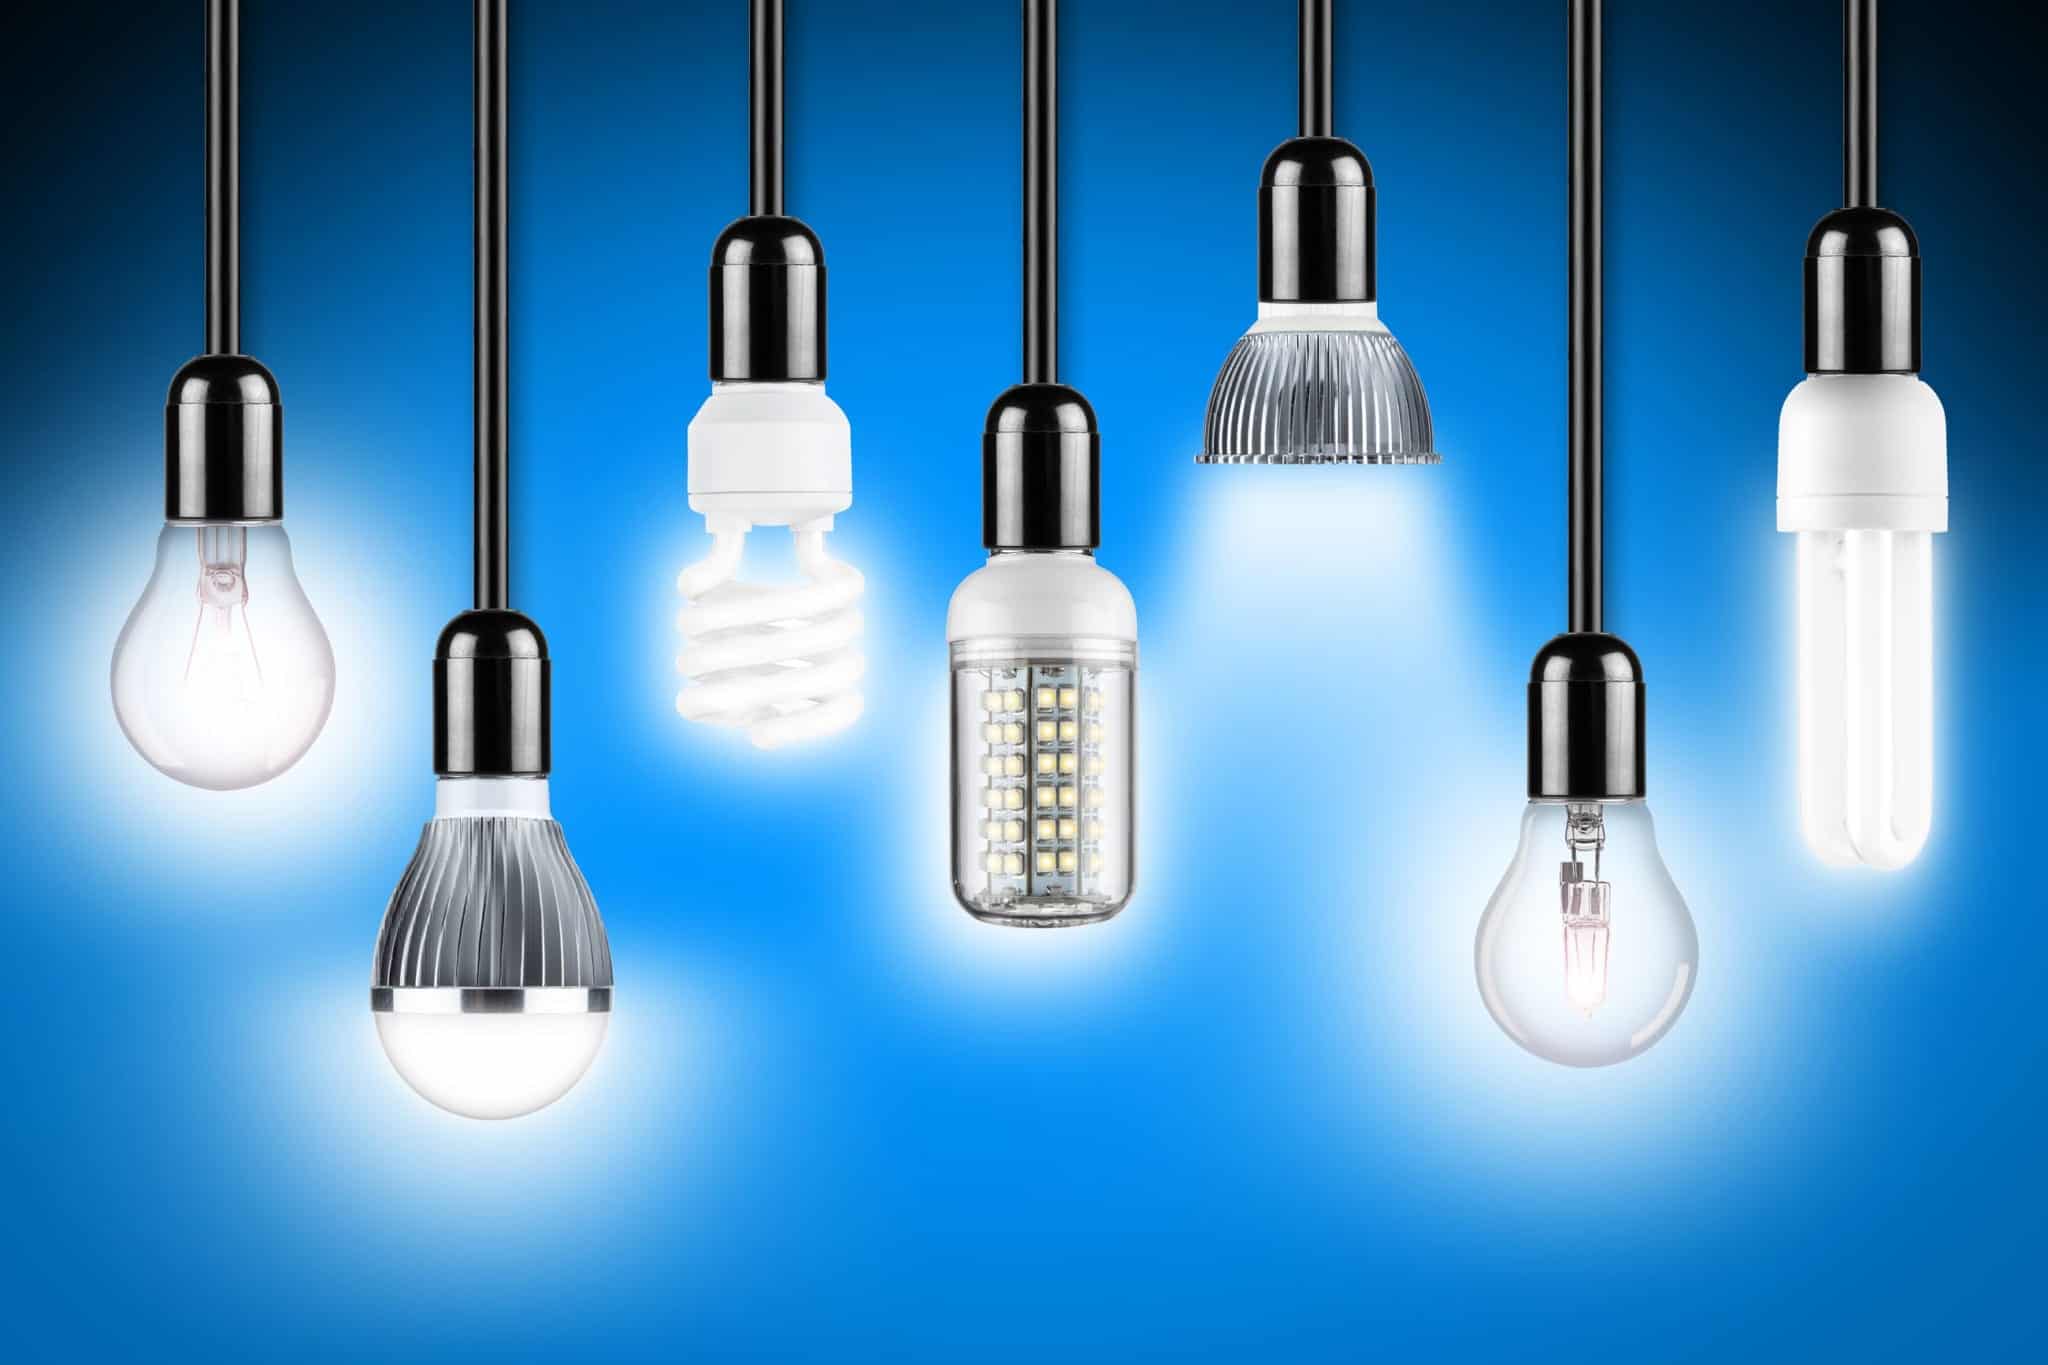 Đèn LED là gì? Cấu tạo, ứng dụng của công nghệ LED